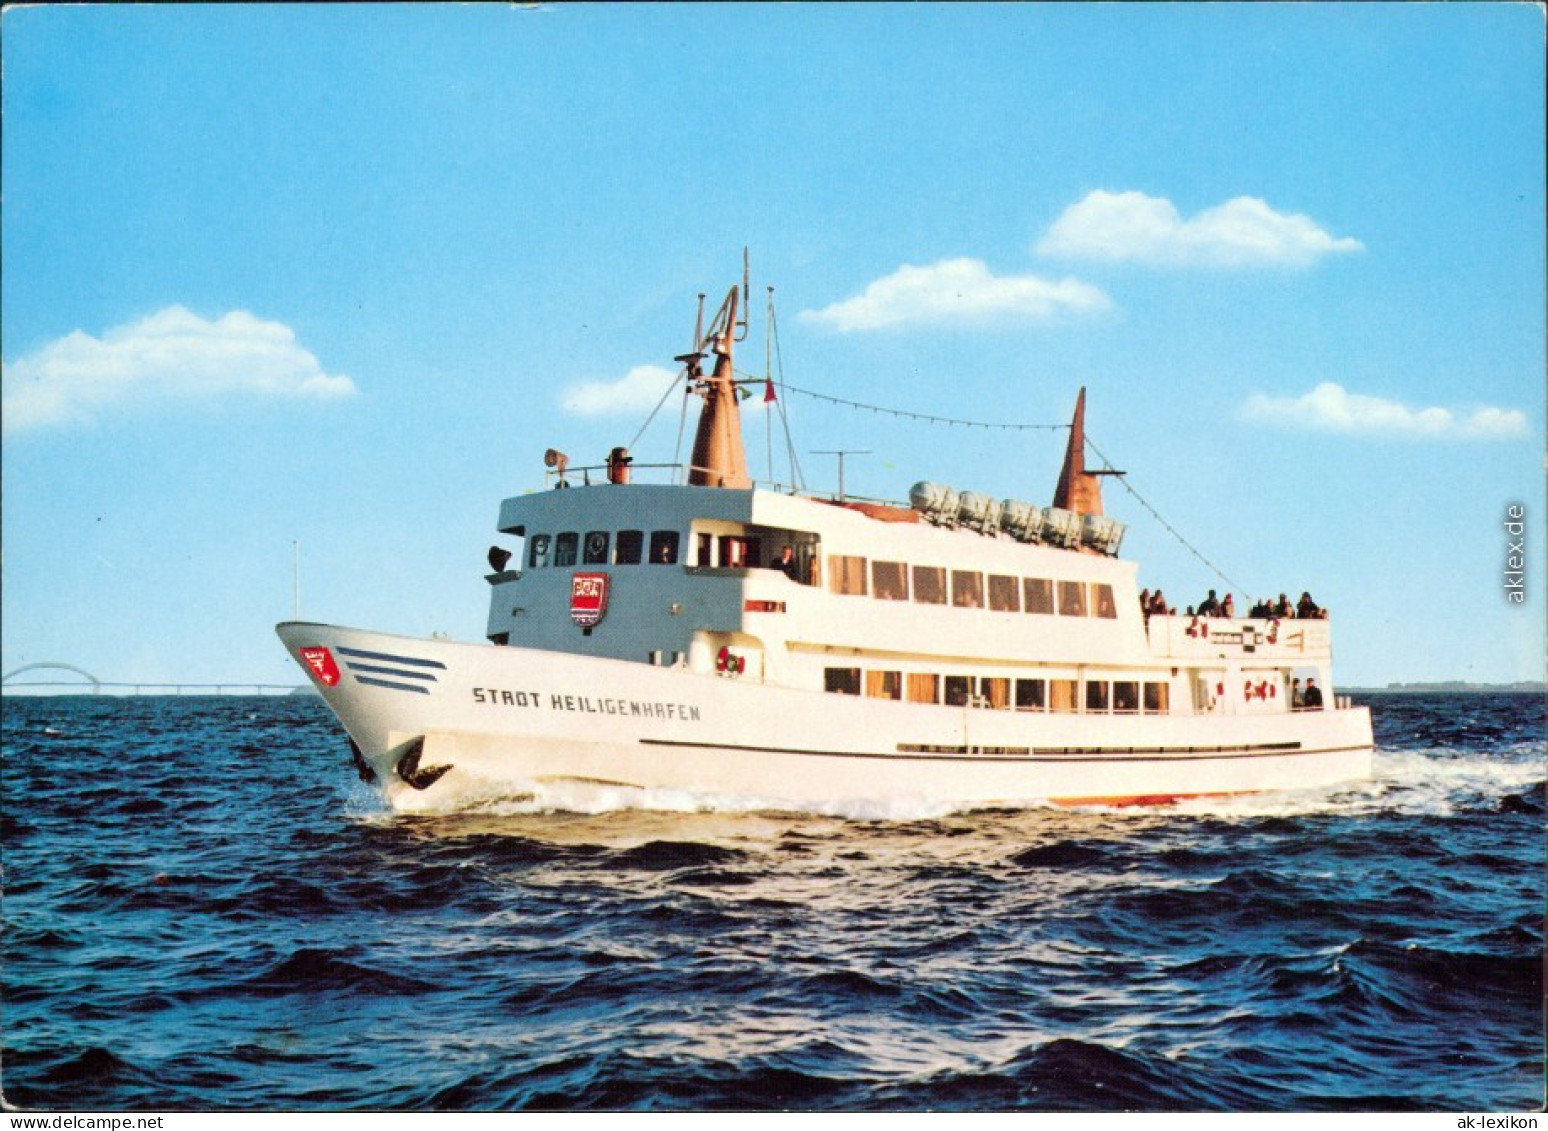 Ansichtskarte  Fähre "Stadt Heiligenhafen" 1985 - Ferries